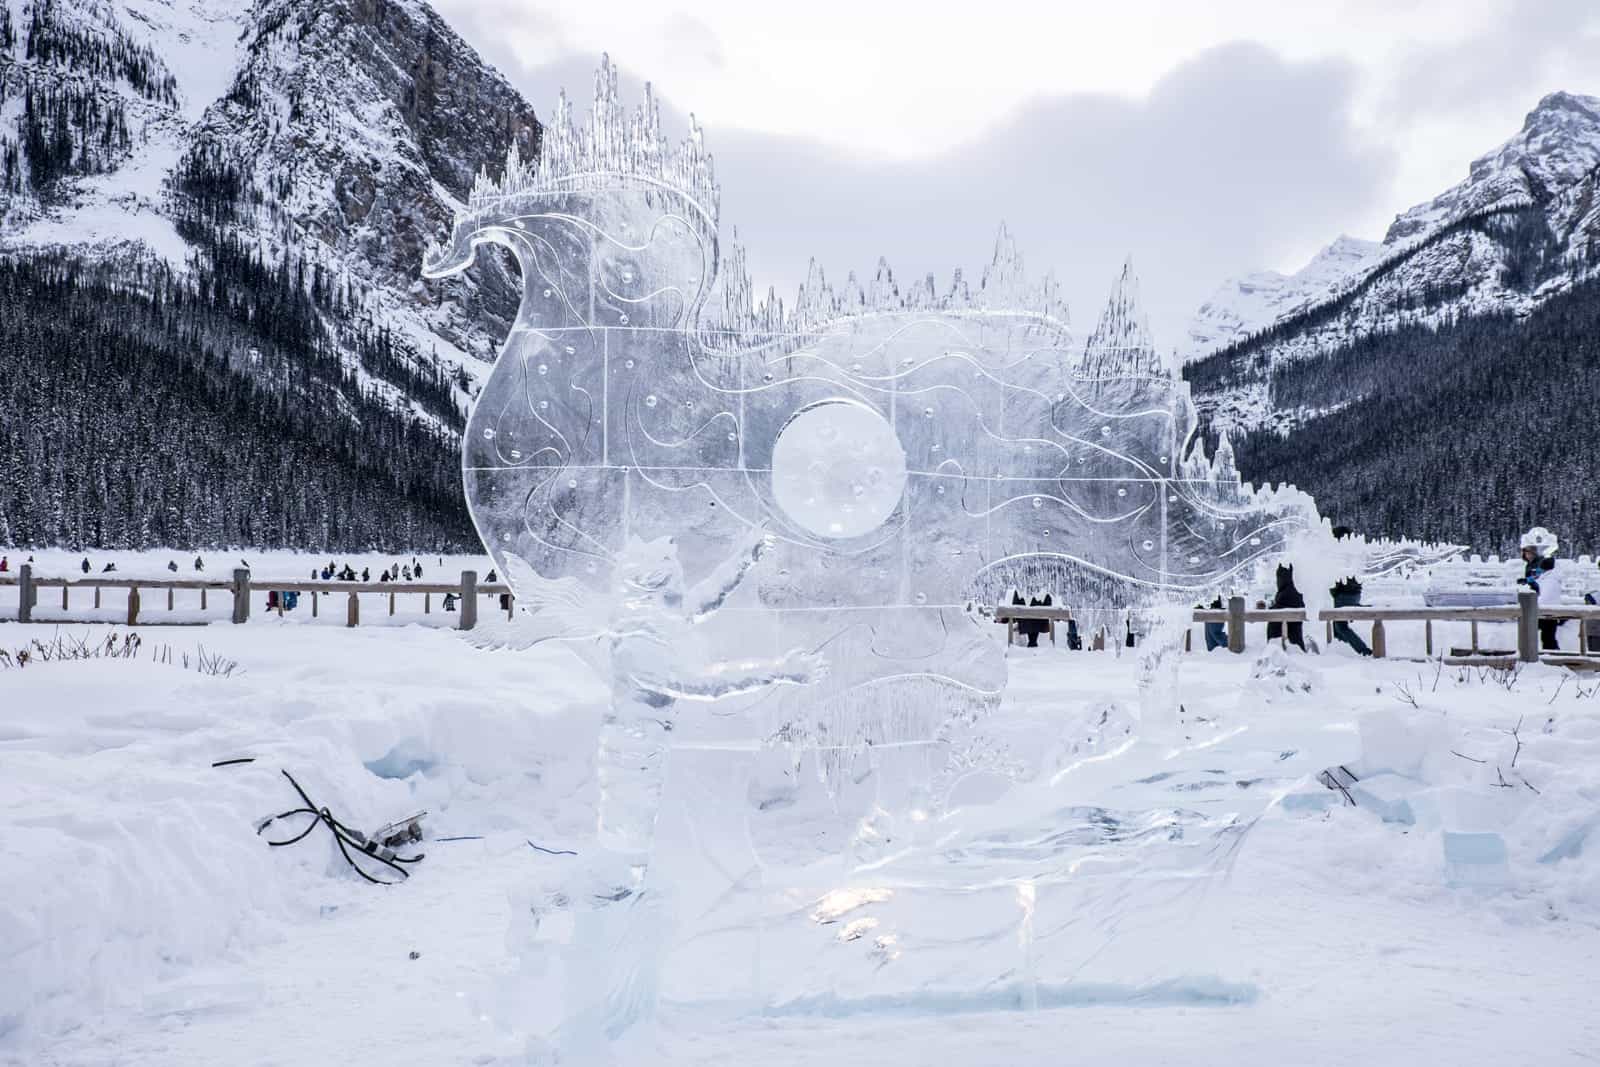 Ice art at Ice Magic Festival, Chateau Lake Louise, Banff, Canada